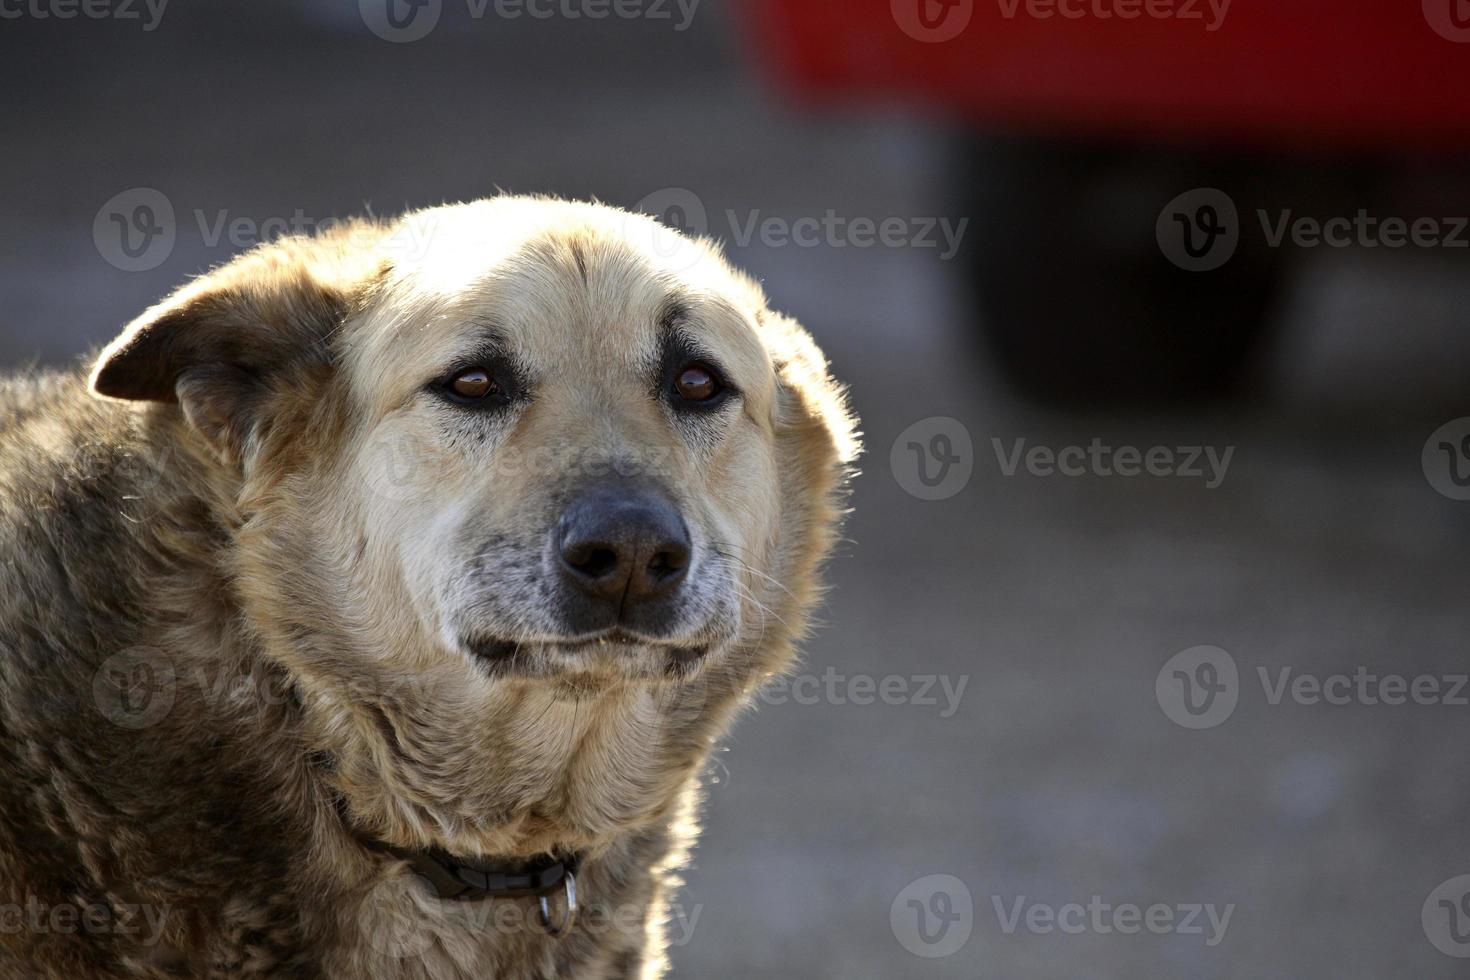 An older junkyard dog photo